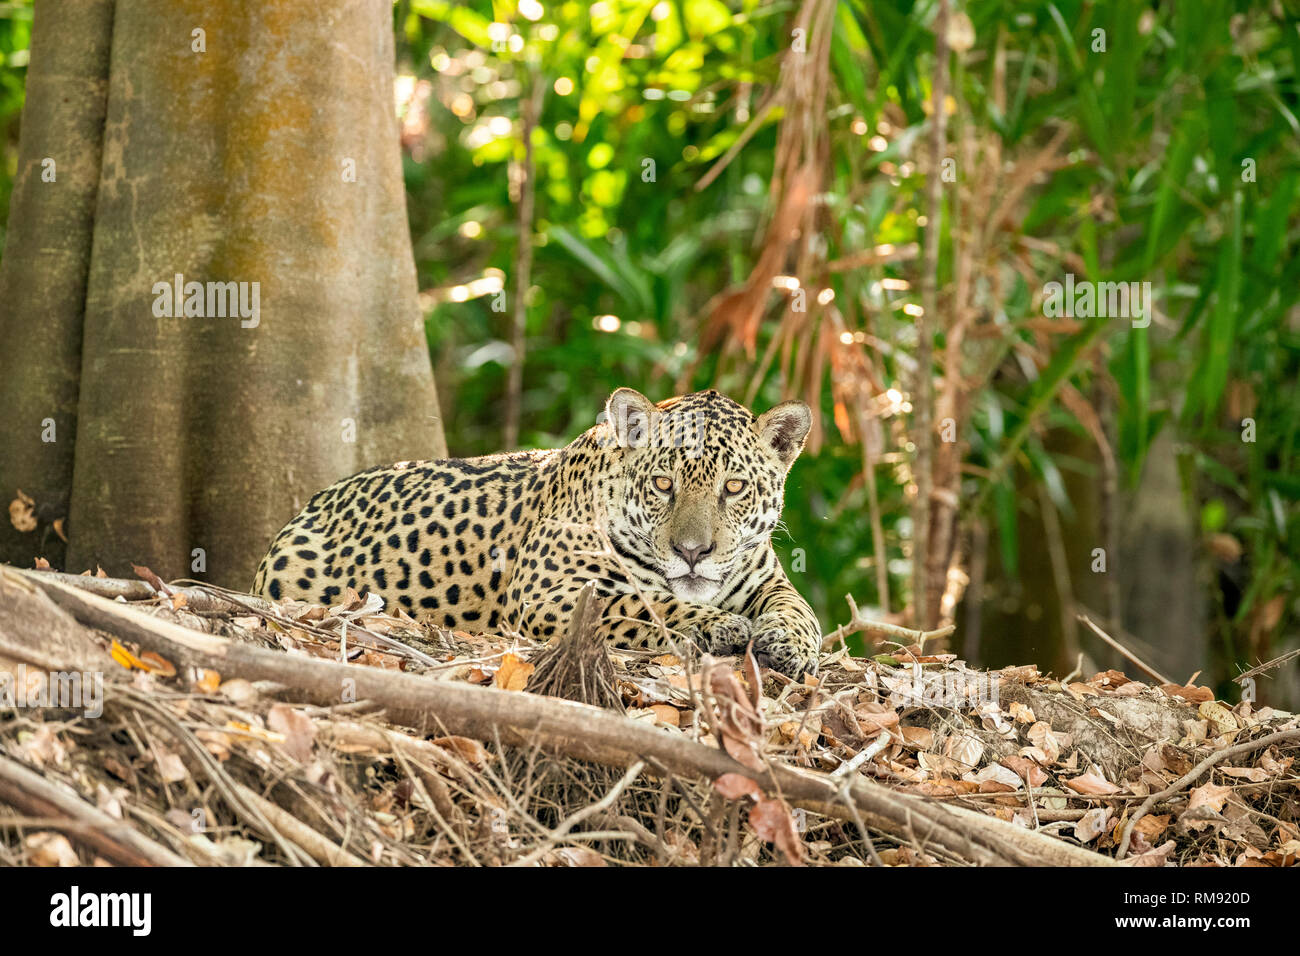 Jaguar, Panthera onca, Pantanal, Mato Grosso, Brazil Stock Photo